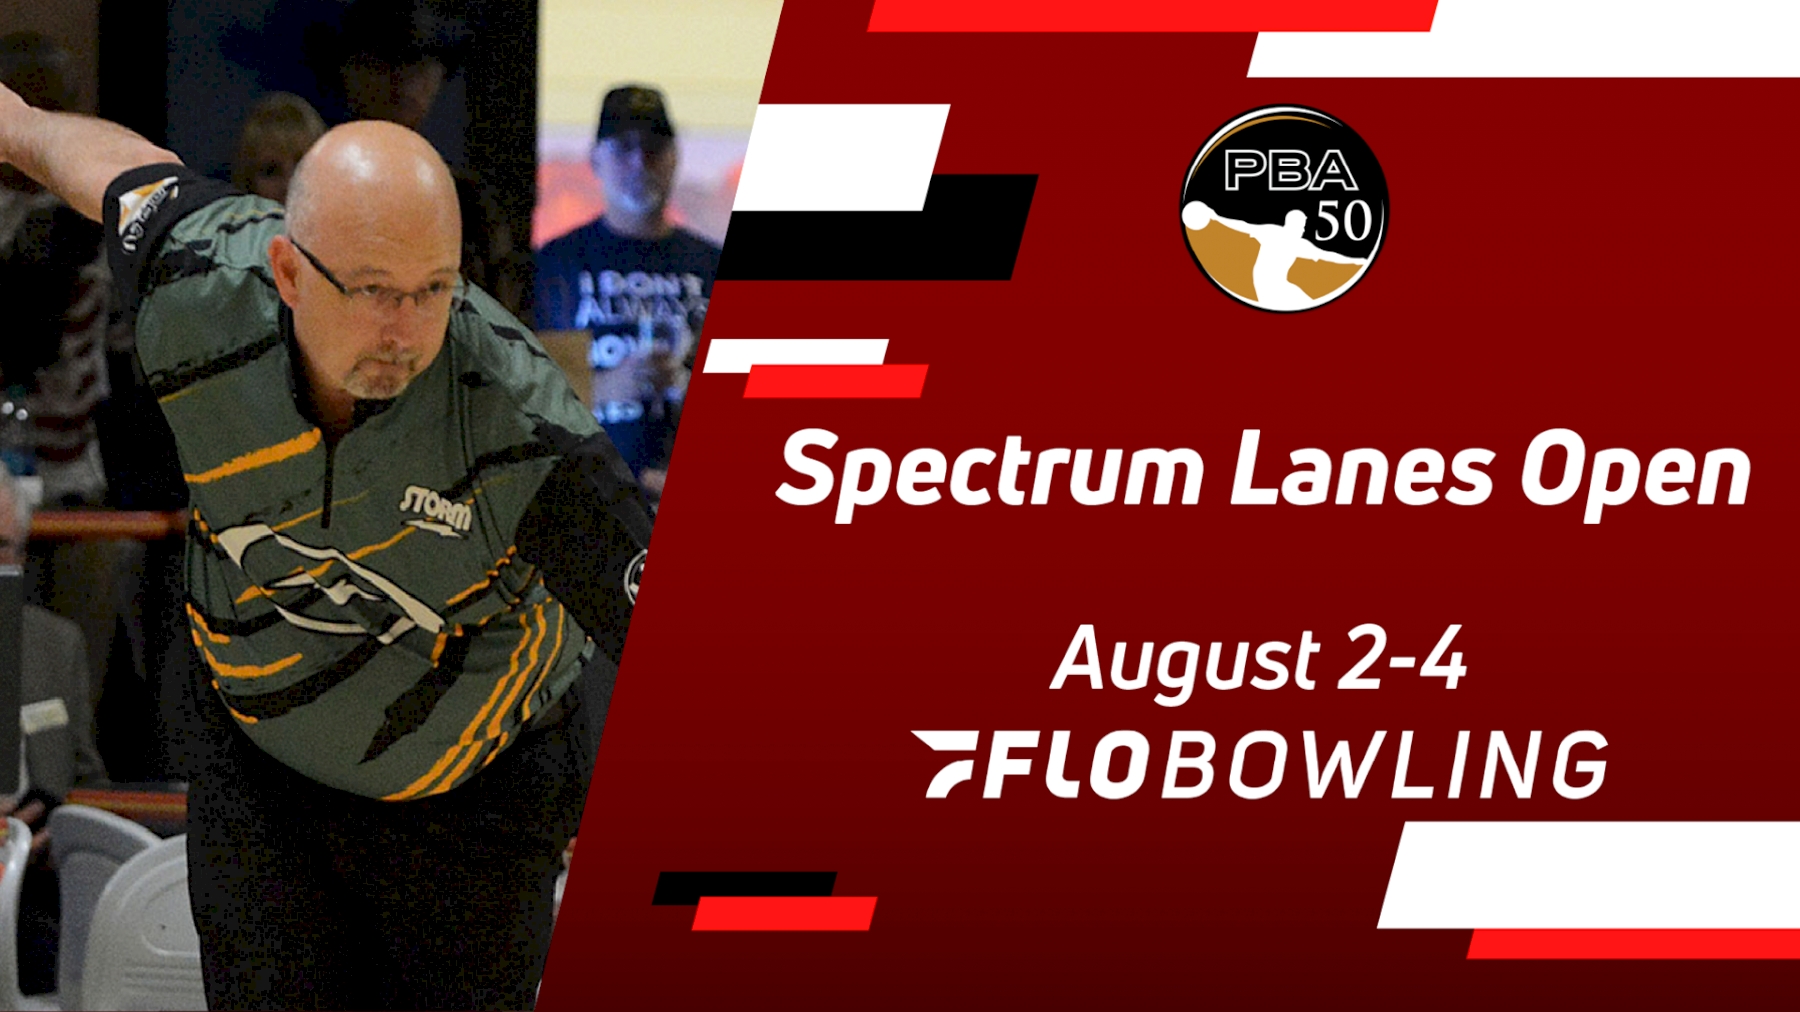 2021 PBA50 Spectrum Lanes Open Schedule FloBowling